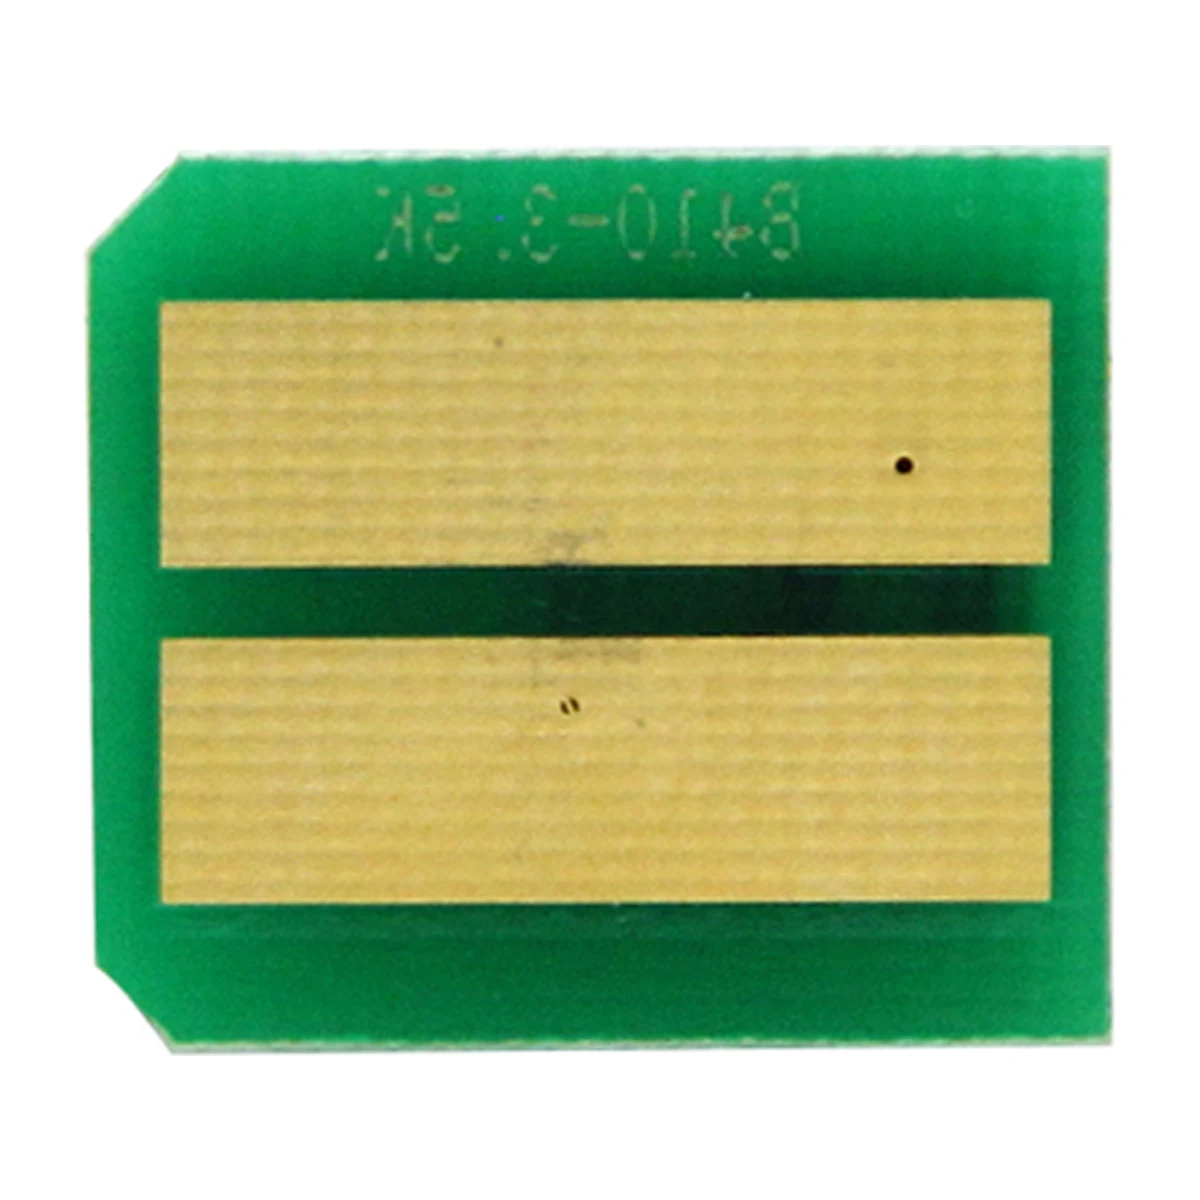 

10 шт. совместимый чип для тонера 43979101 43979102 для принтера OKI B410 B420 B430 B440 MB460 MB470 MB480